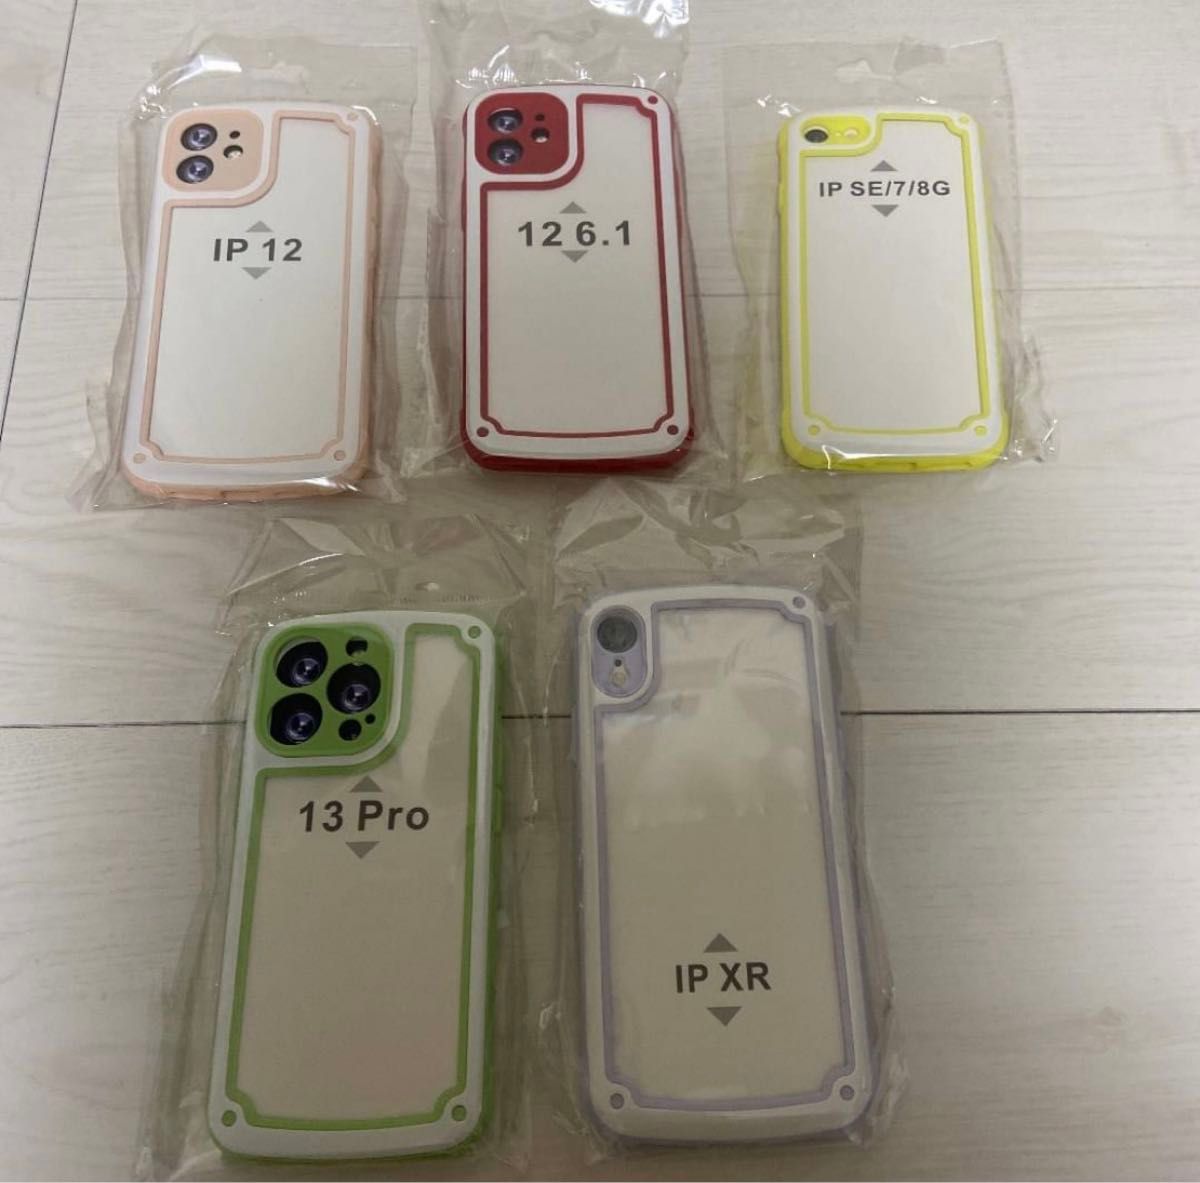 iPhone12 黄緑色 グリーン iPhoneケース 携帯ケース クリアケース 透明ケース シンプルケース アイフォンケース